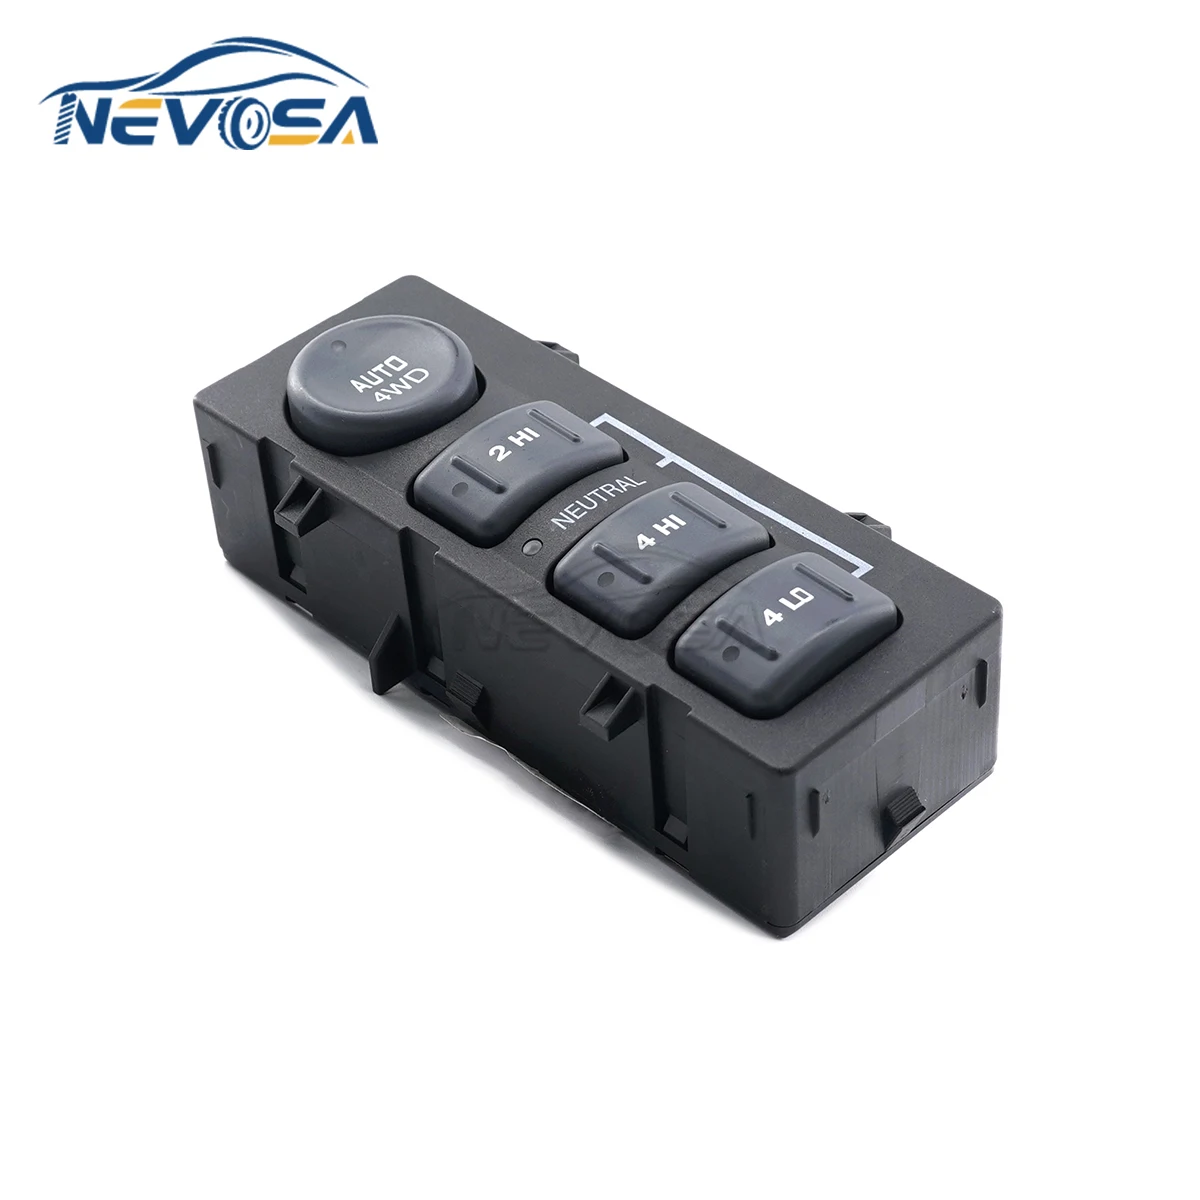 

Nevosa 19168767 4WD Wheel Drive Control Switch Button For Chevrolet Silverado AVALANCHE Silverado TAHOE GMC Sierra 15709327